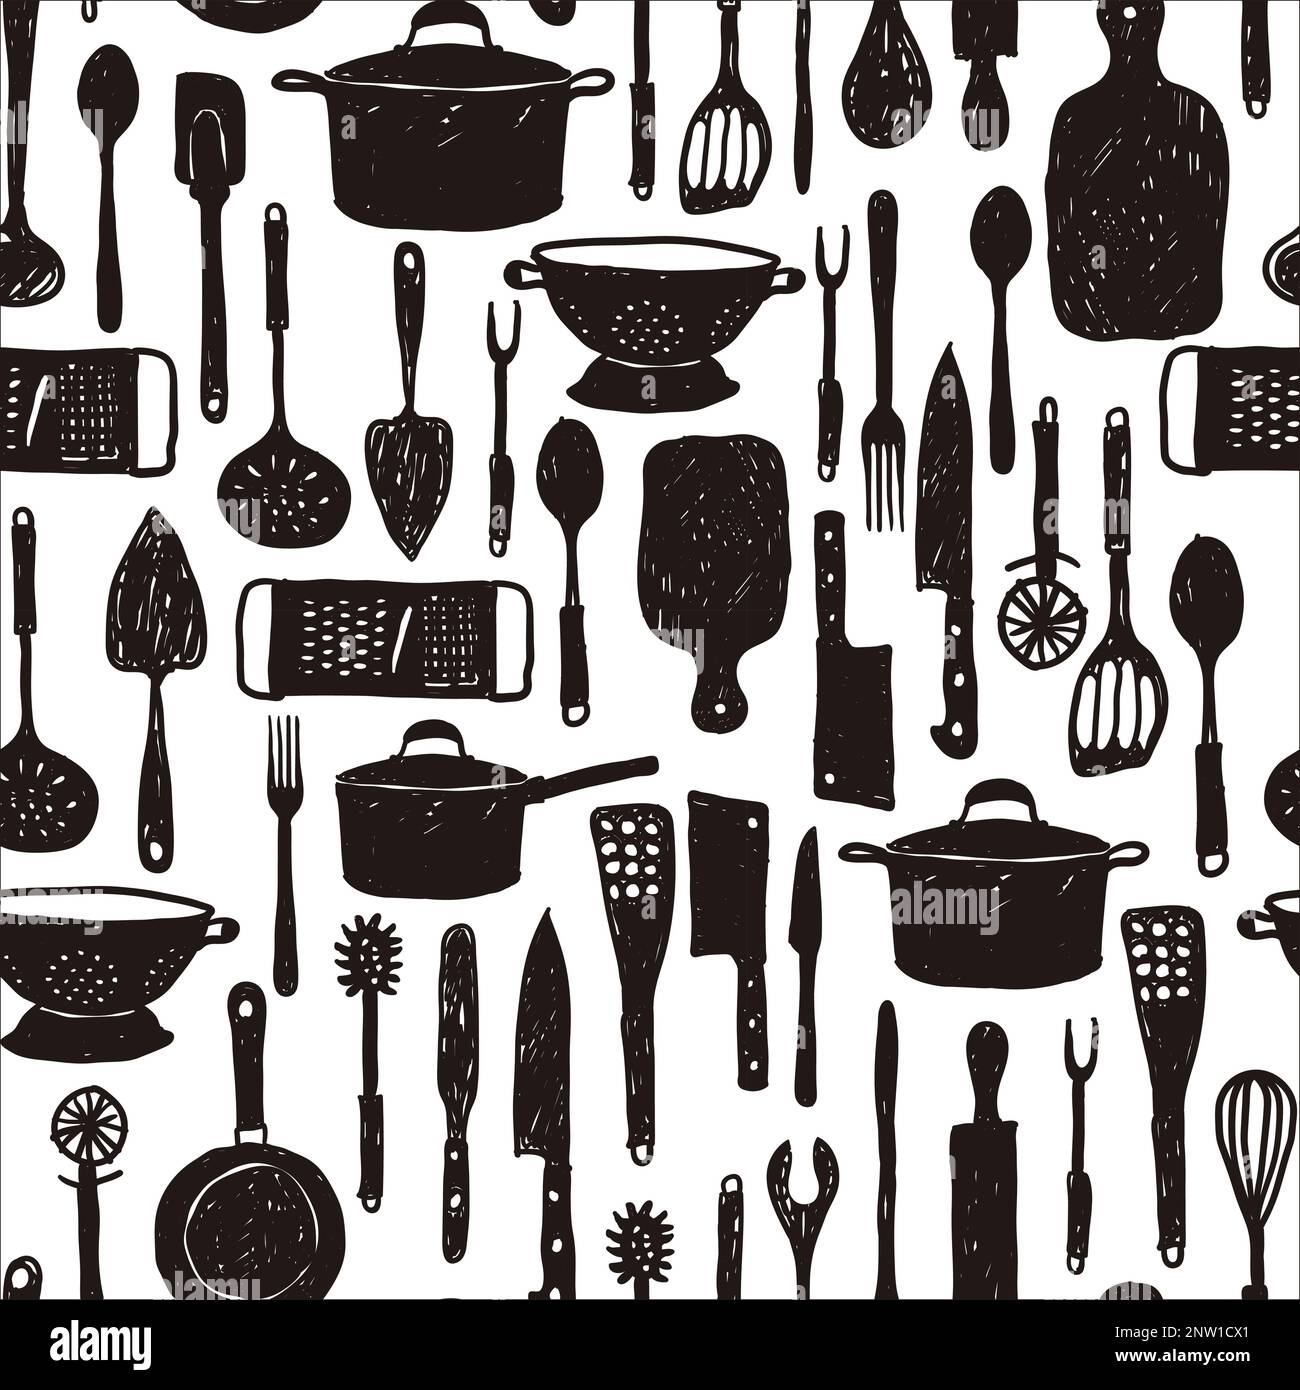 Aparato Eléctrico Y Utensilios De Cocina Modernas Conjunto Ilustraciones  svg, vectoriales, clip art vectorizado libre de derechos. Image 102053458